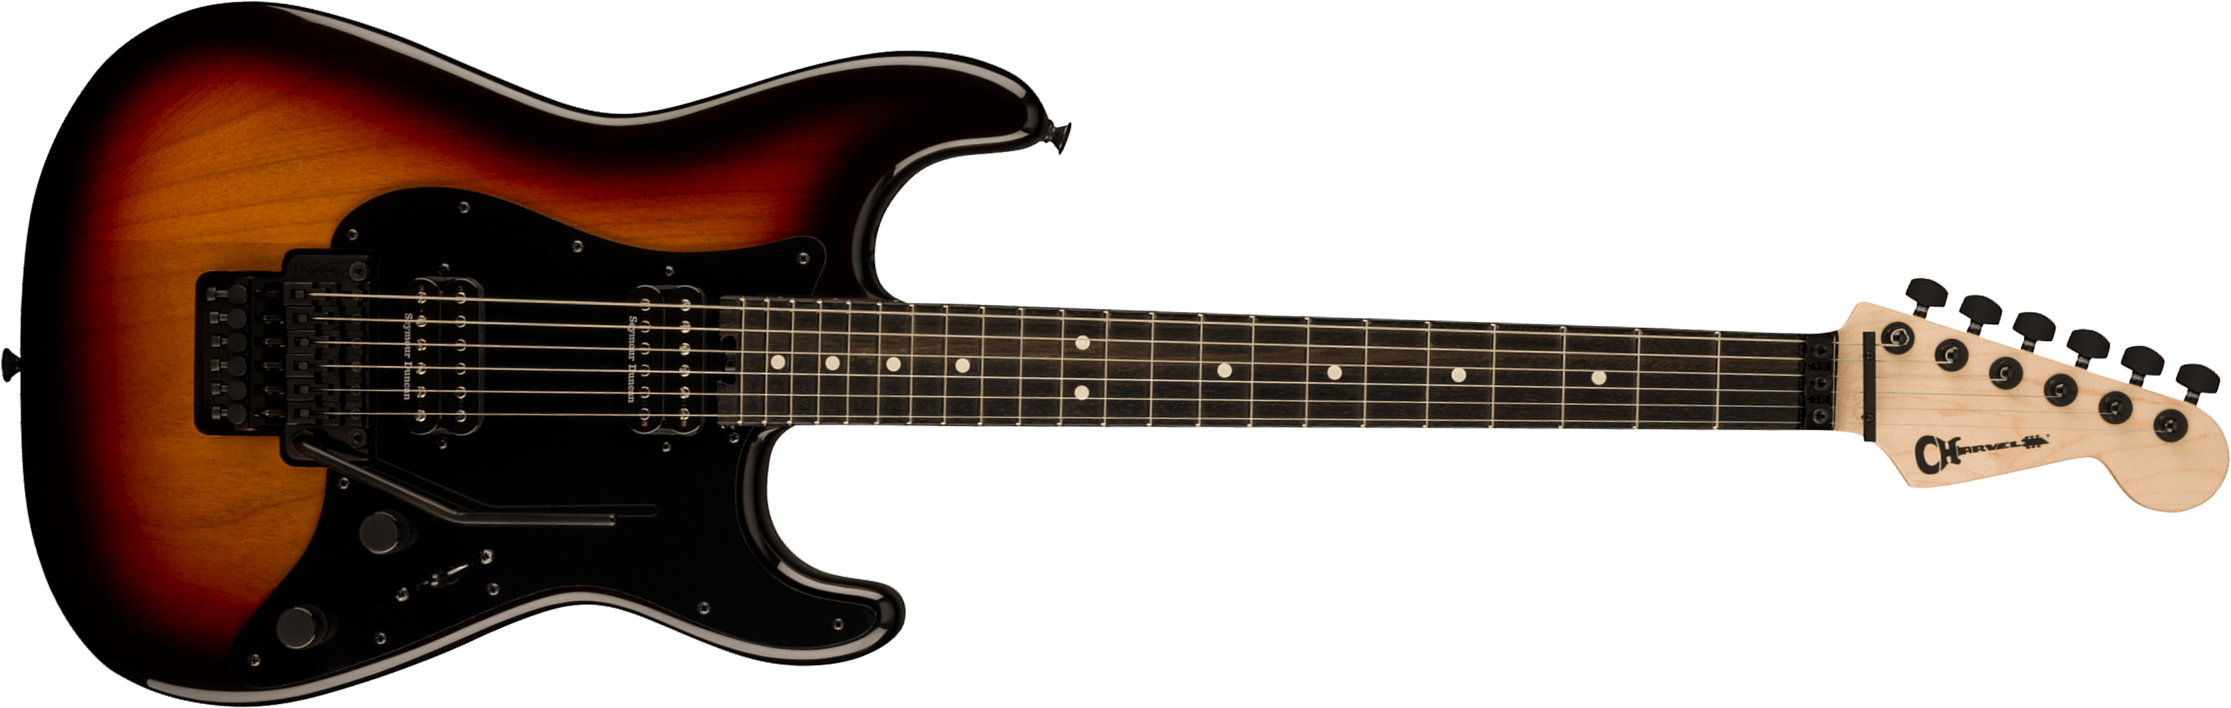 Charvel So-cal Style 1 Hh Fr E Pro-mod 2h Seymour Duncan Eb - Three-tone Sunburst - Guitare Électrique Forme Str - Main picture